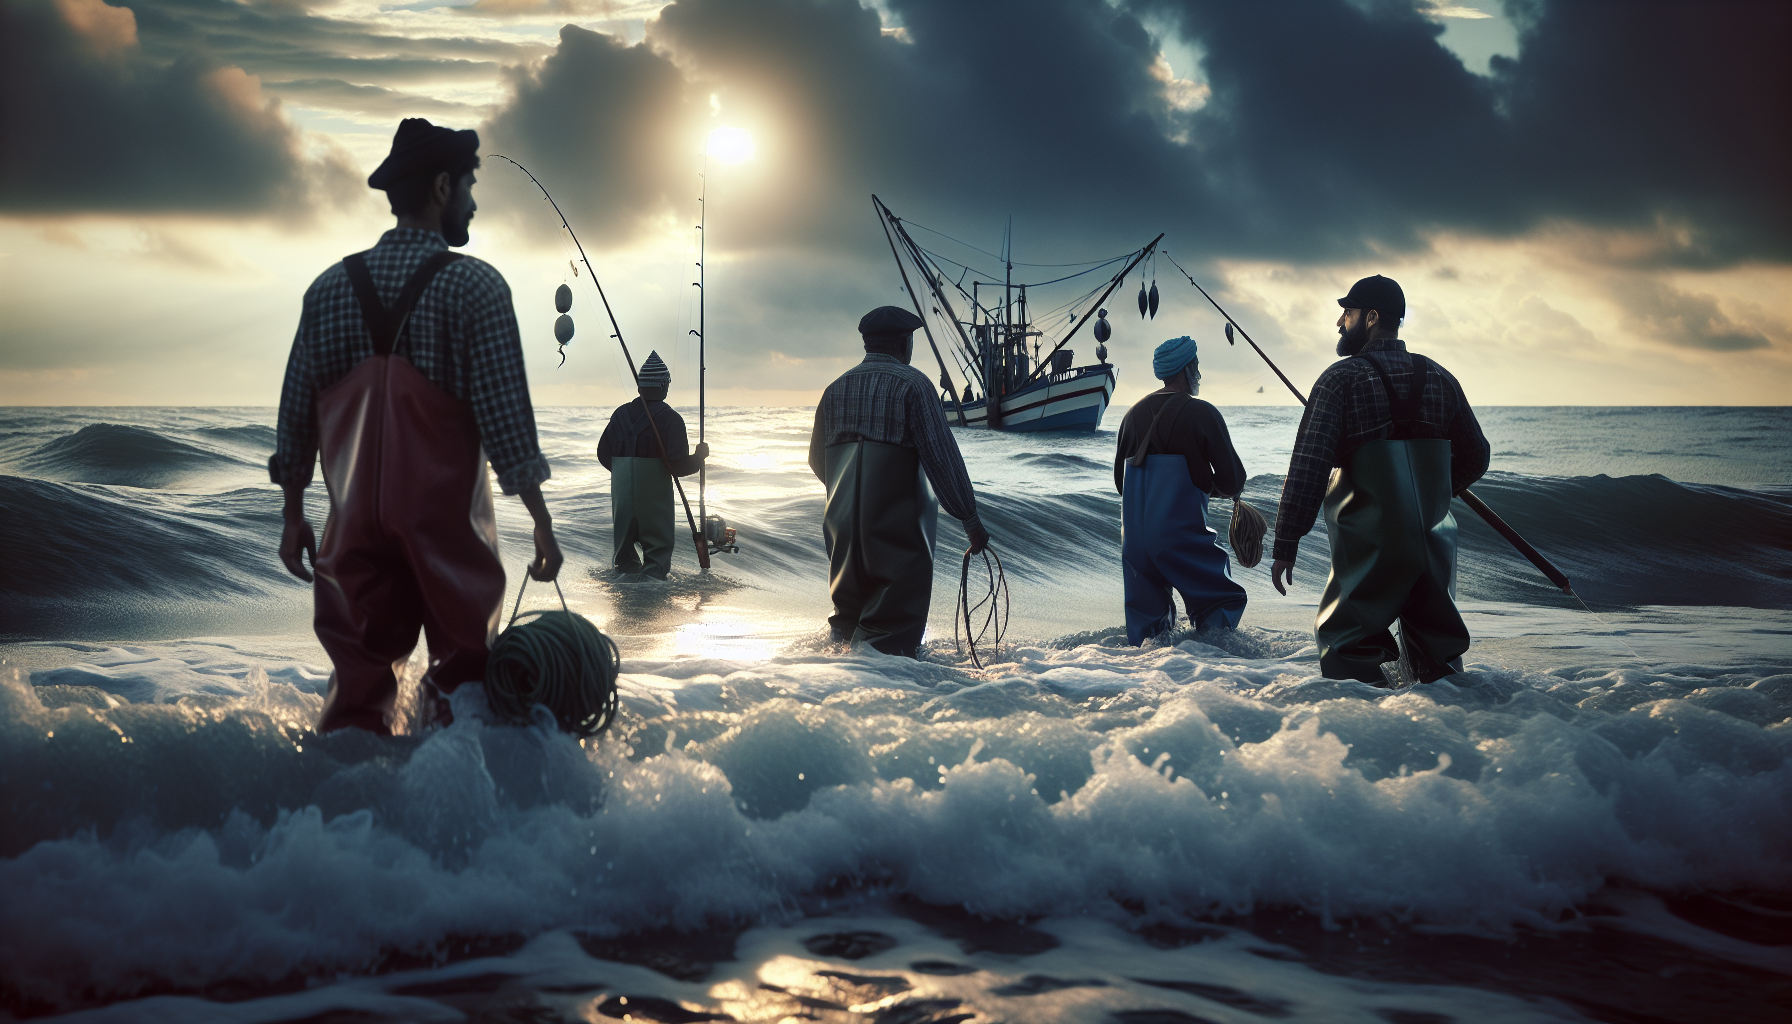 Nghề đánh cá: Con người vùng biển đã từ lâu gắn bó với nghề đánh cá, mỗi ngày ra khơi đối mặt với biển cả để kiếm sống.